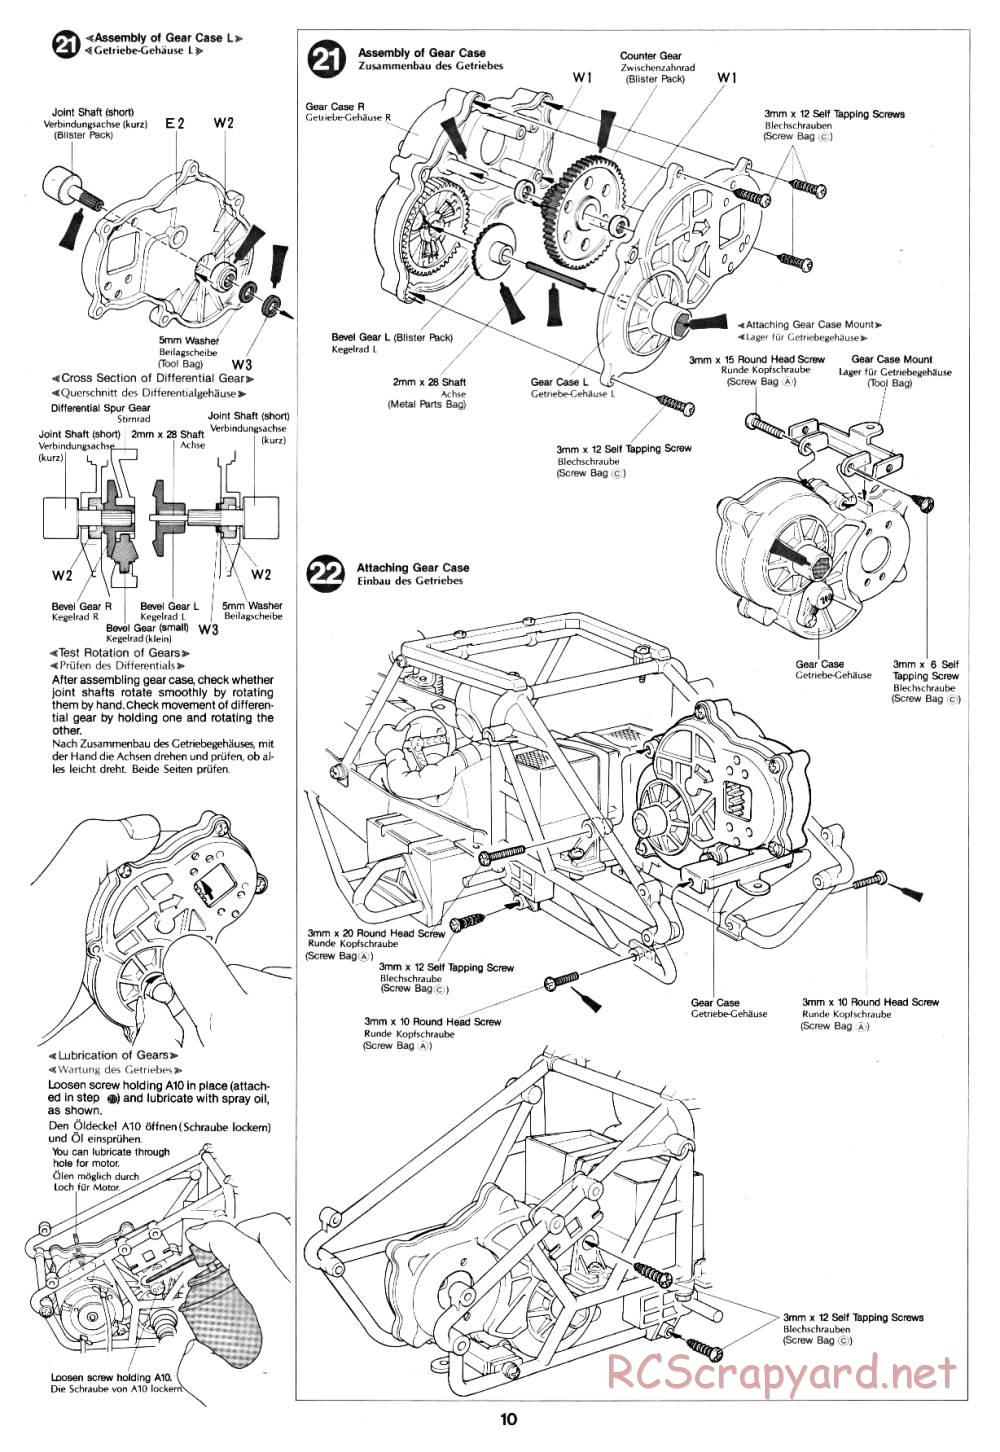 Tamiya - Fast Attack Vehicle - 58046 - Manual - Page 10